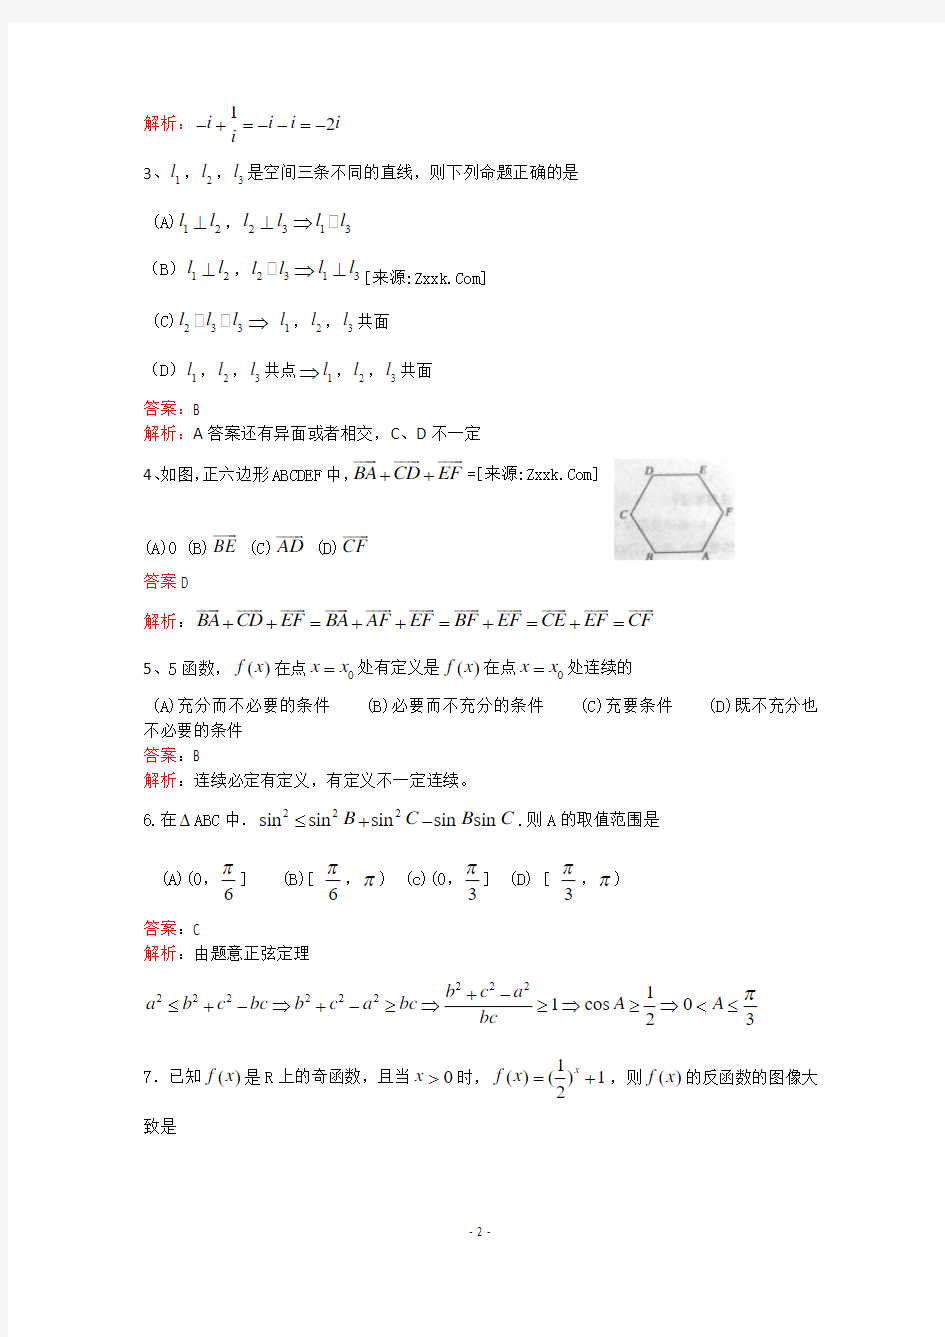 2011年全国高考理科数学试题及答案-四川